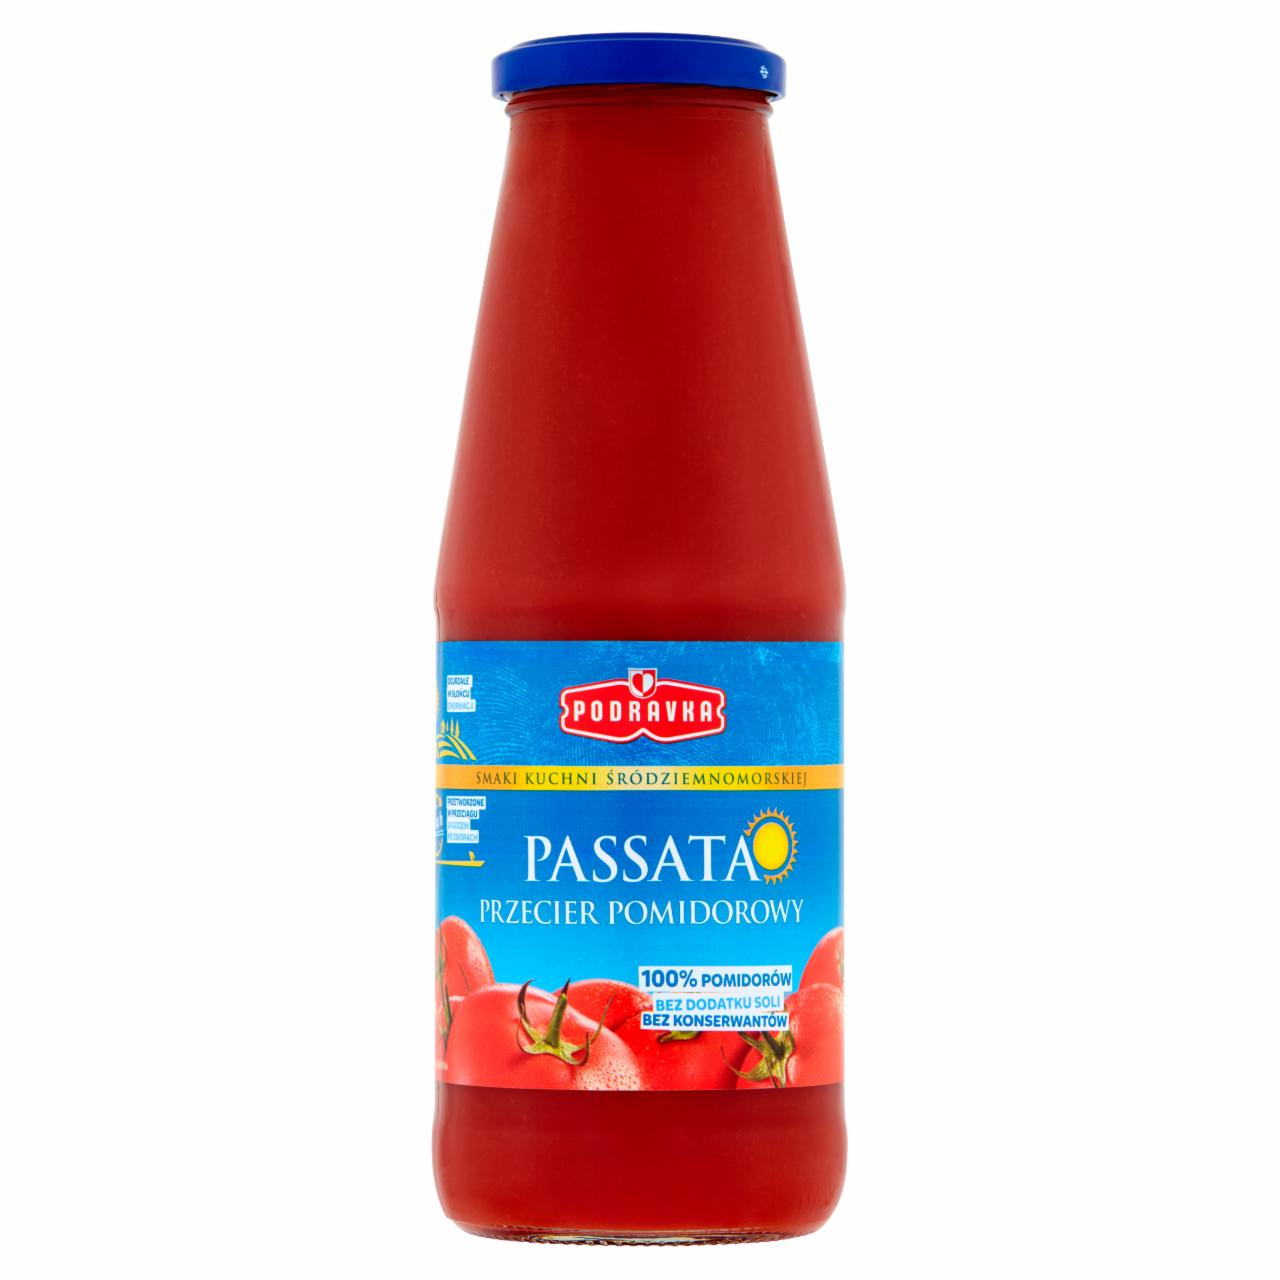 Zdjęcia - Podravka Passata przecier pomidorowy 680 g